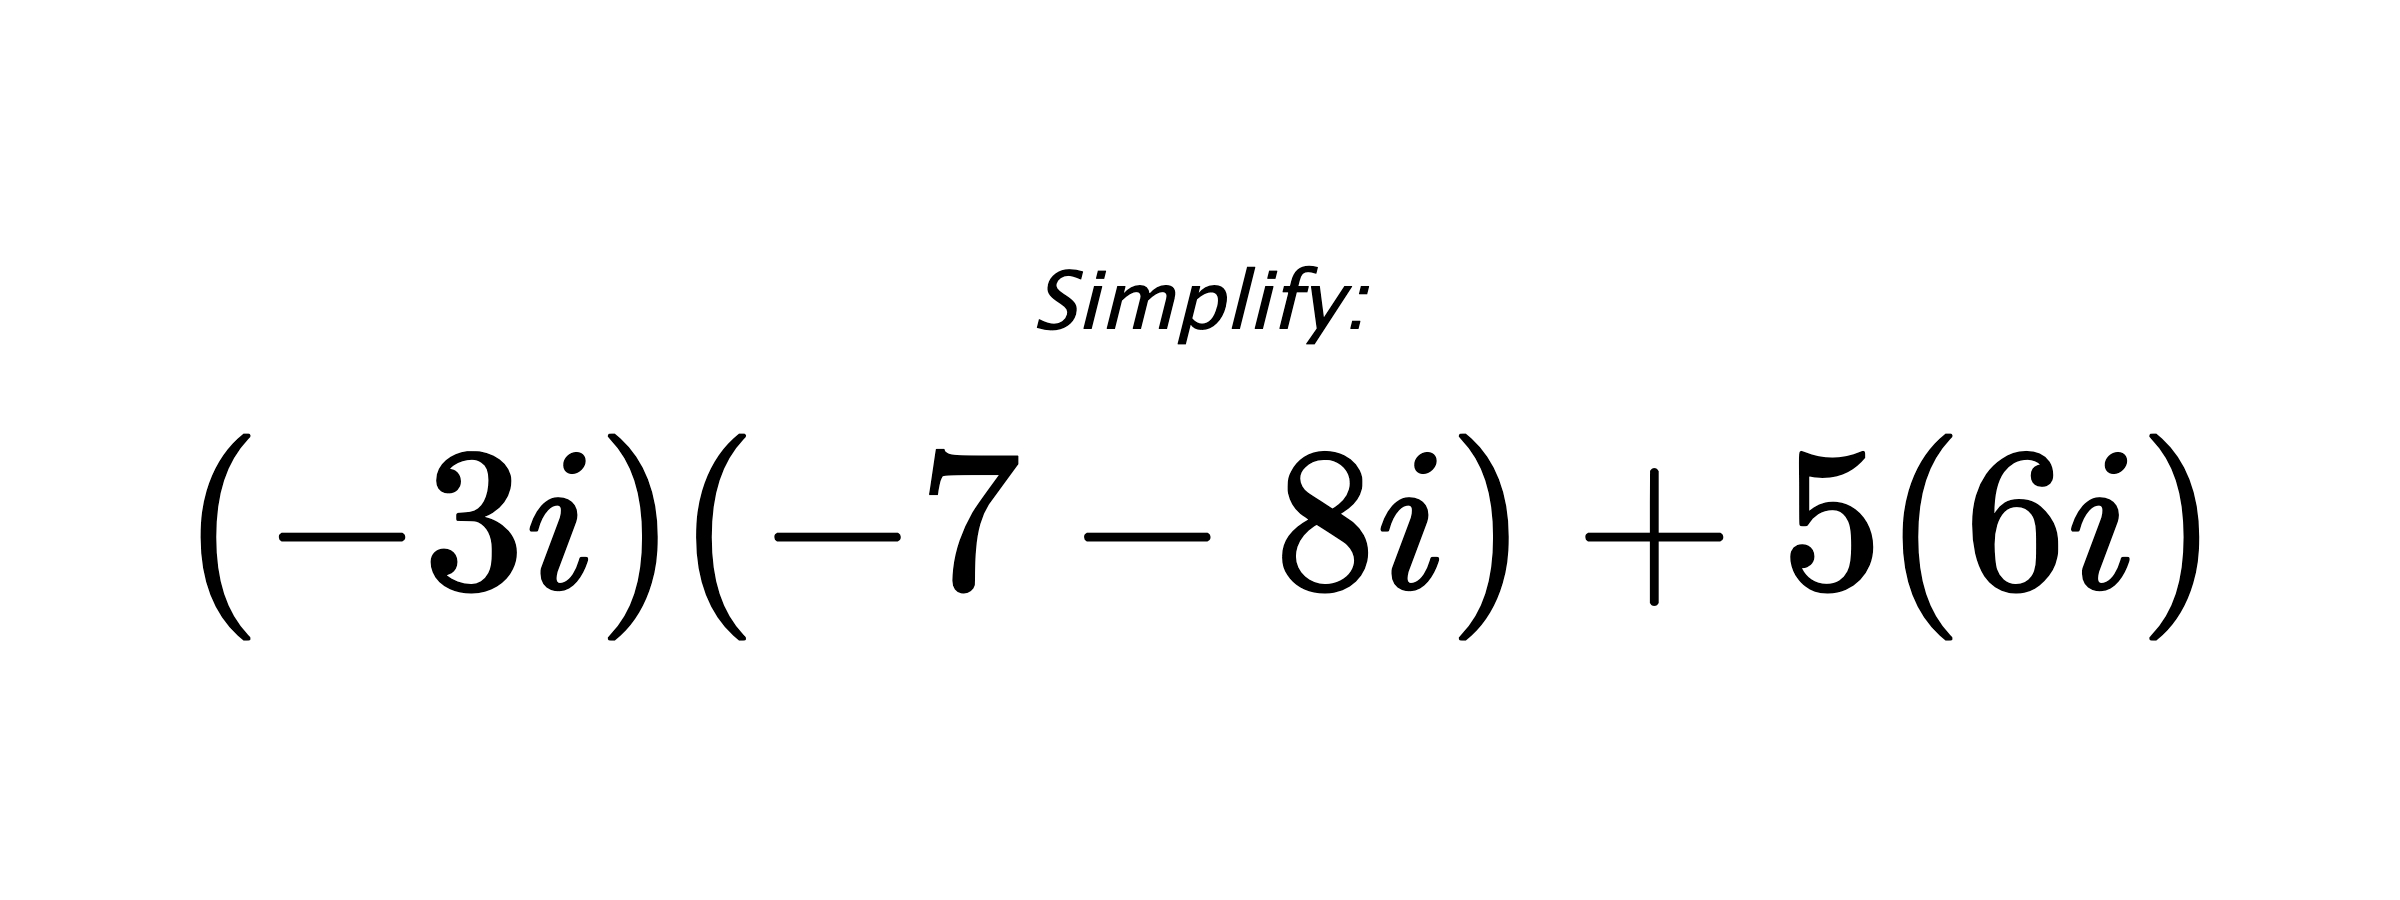 Simplify: $ (-3i)(-7-8i)+5(6i) $